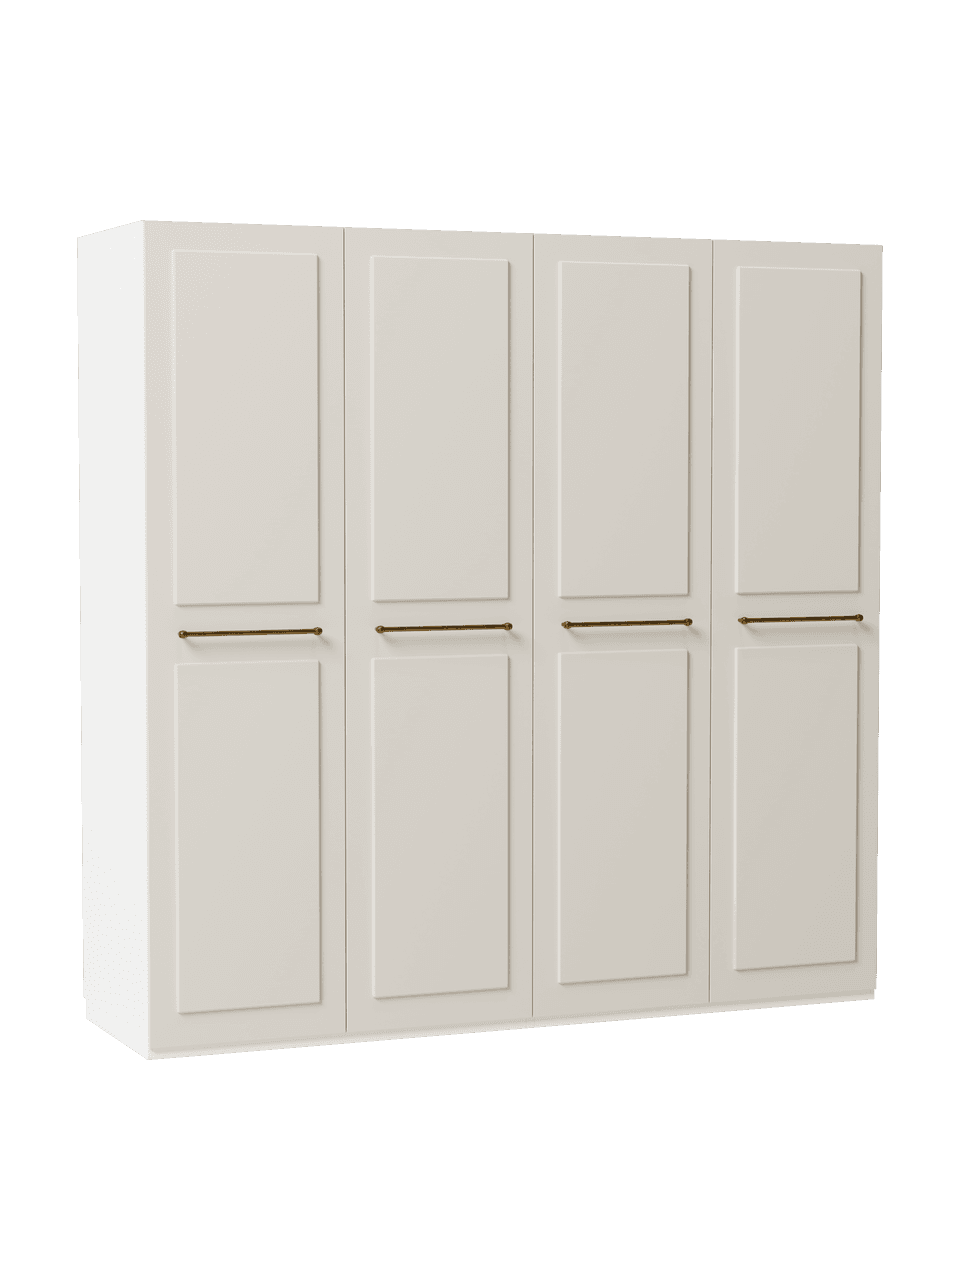 Szafa modułowa Charlotte, 4-drzwiowa, różne warianty, Korpus: płyta wiórowa pokryta mel, Beżowy, W 200 cm, Basic